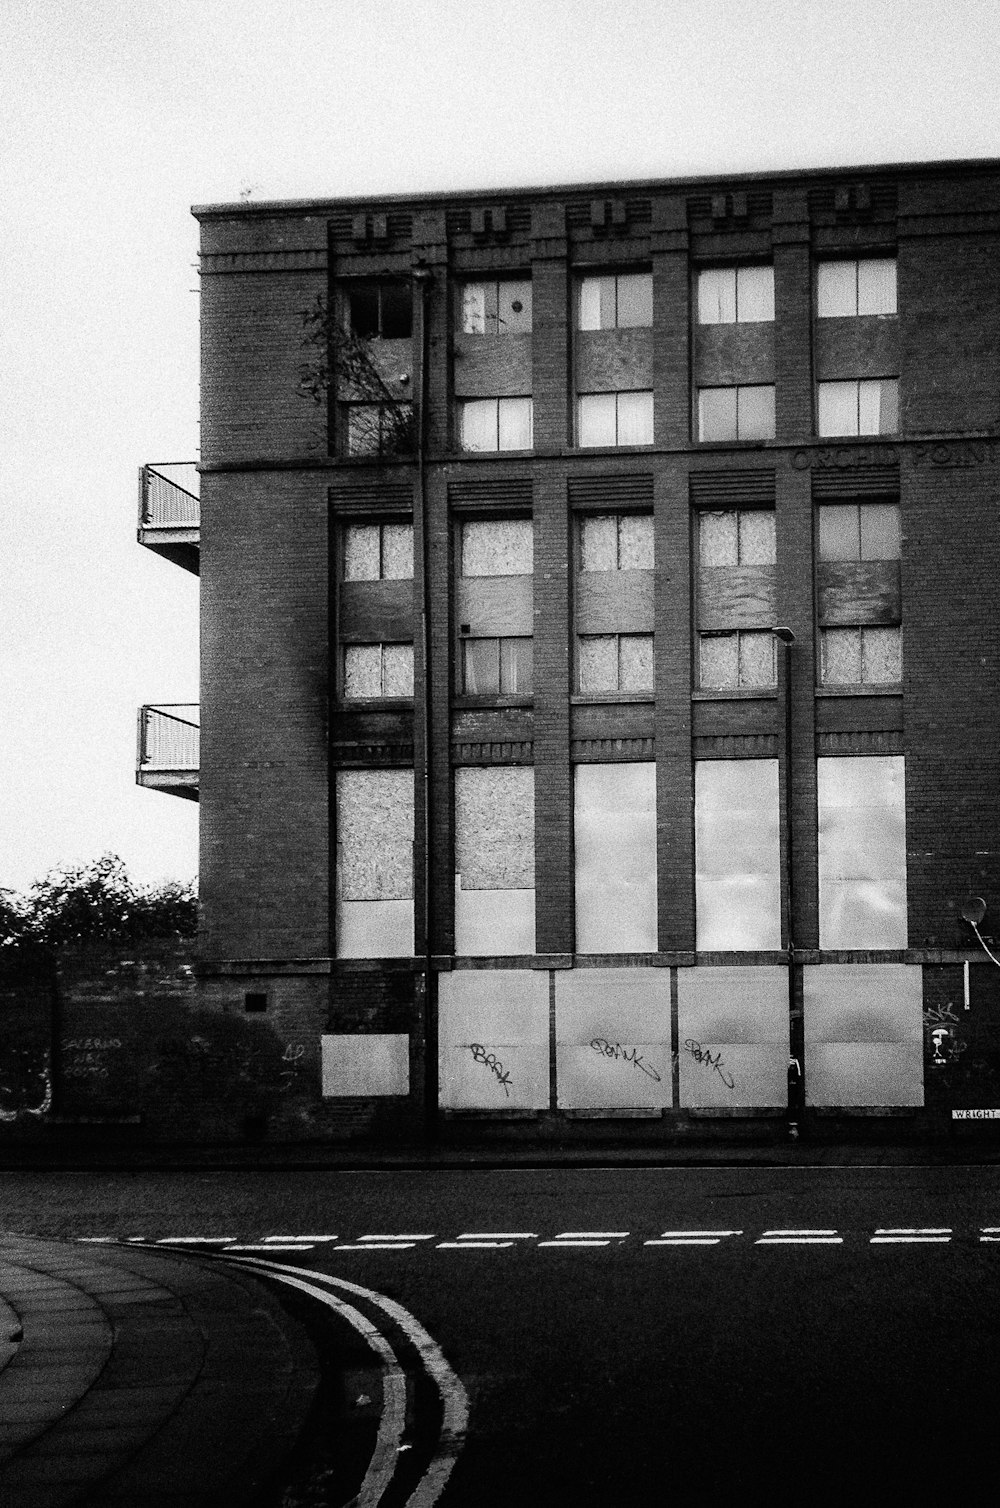 창문이 많은 건물의 흑백 사진